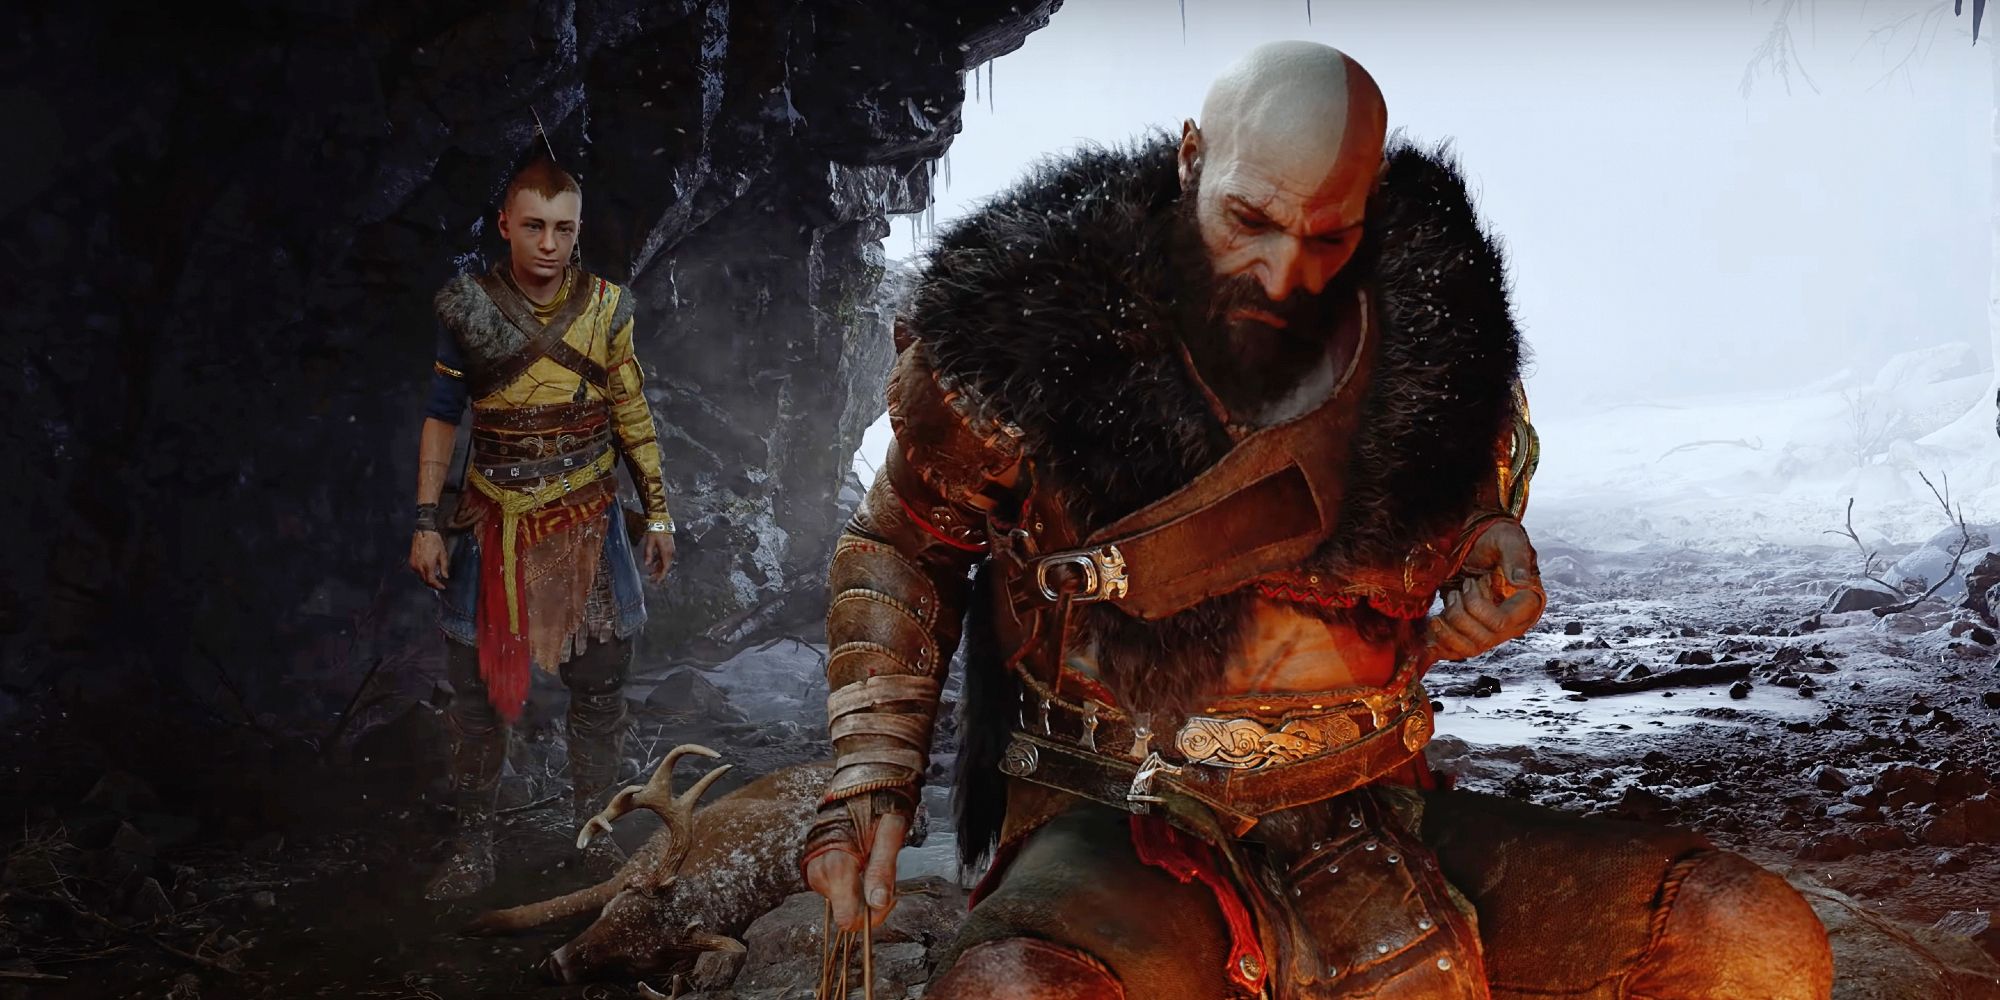 God Of War: Ragnarok Character Images Show Off Kratos, Atreus